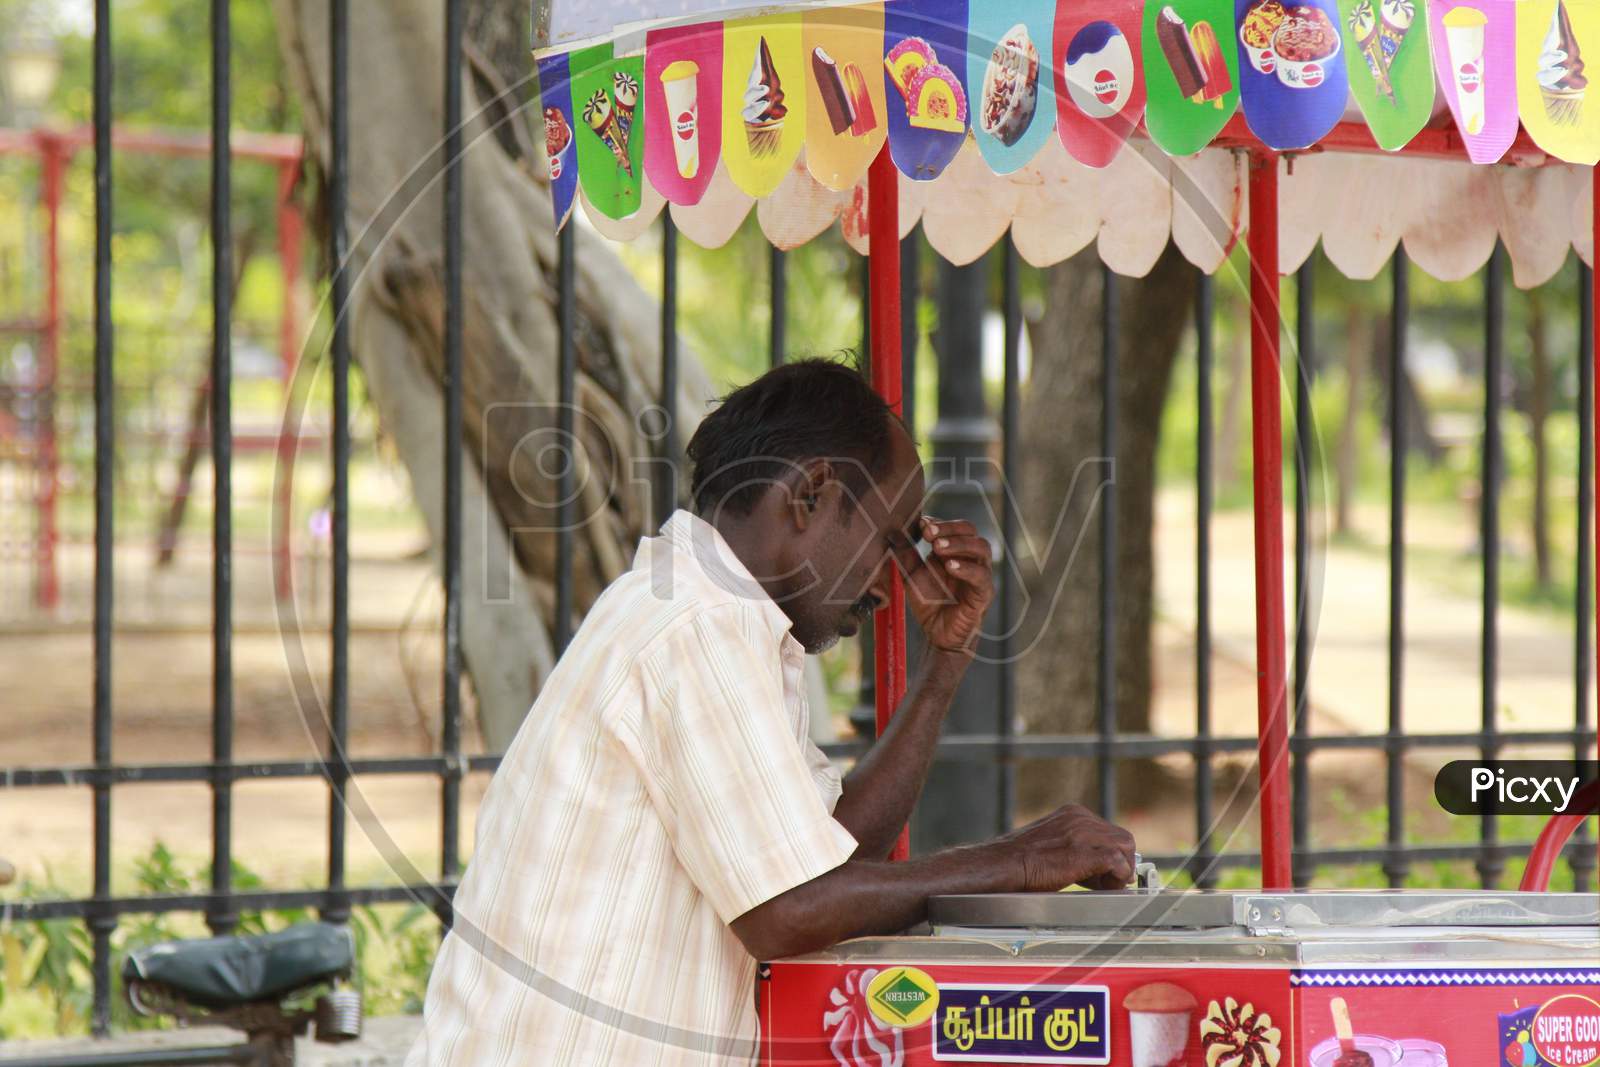 Indian Ice Cream vendor in Pondicherry